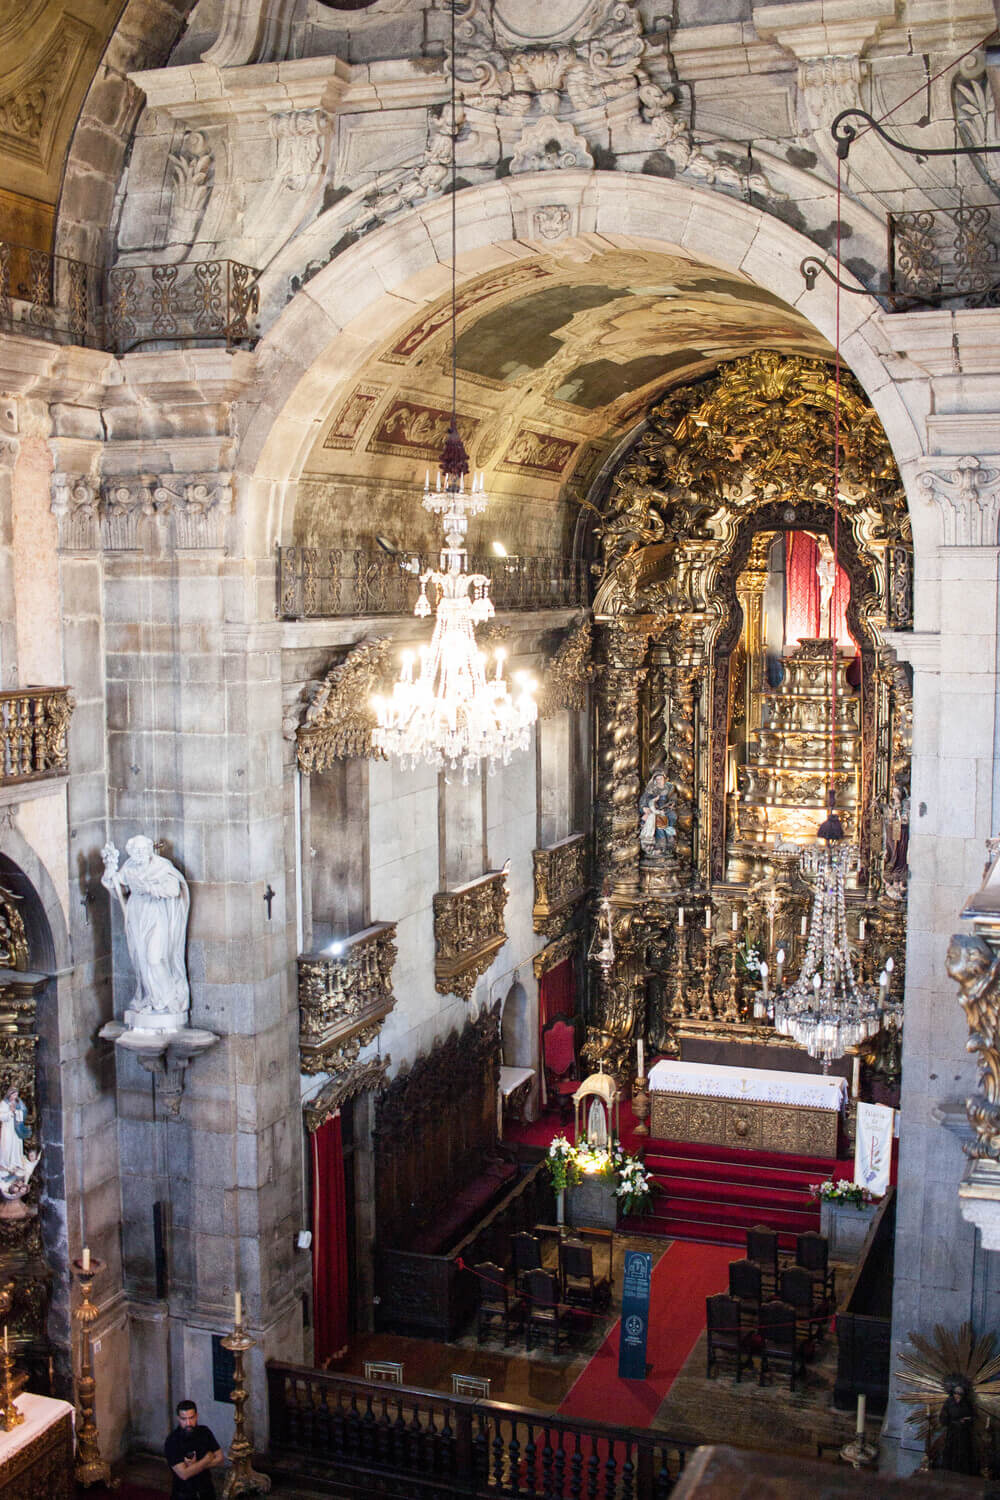 Inside view of Igreja do Carmo in Porto, Portugal.